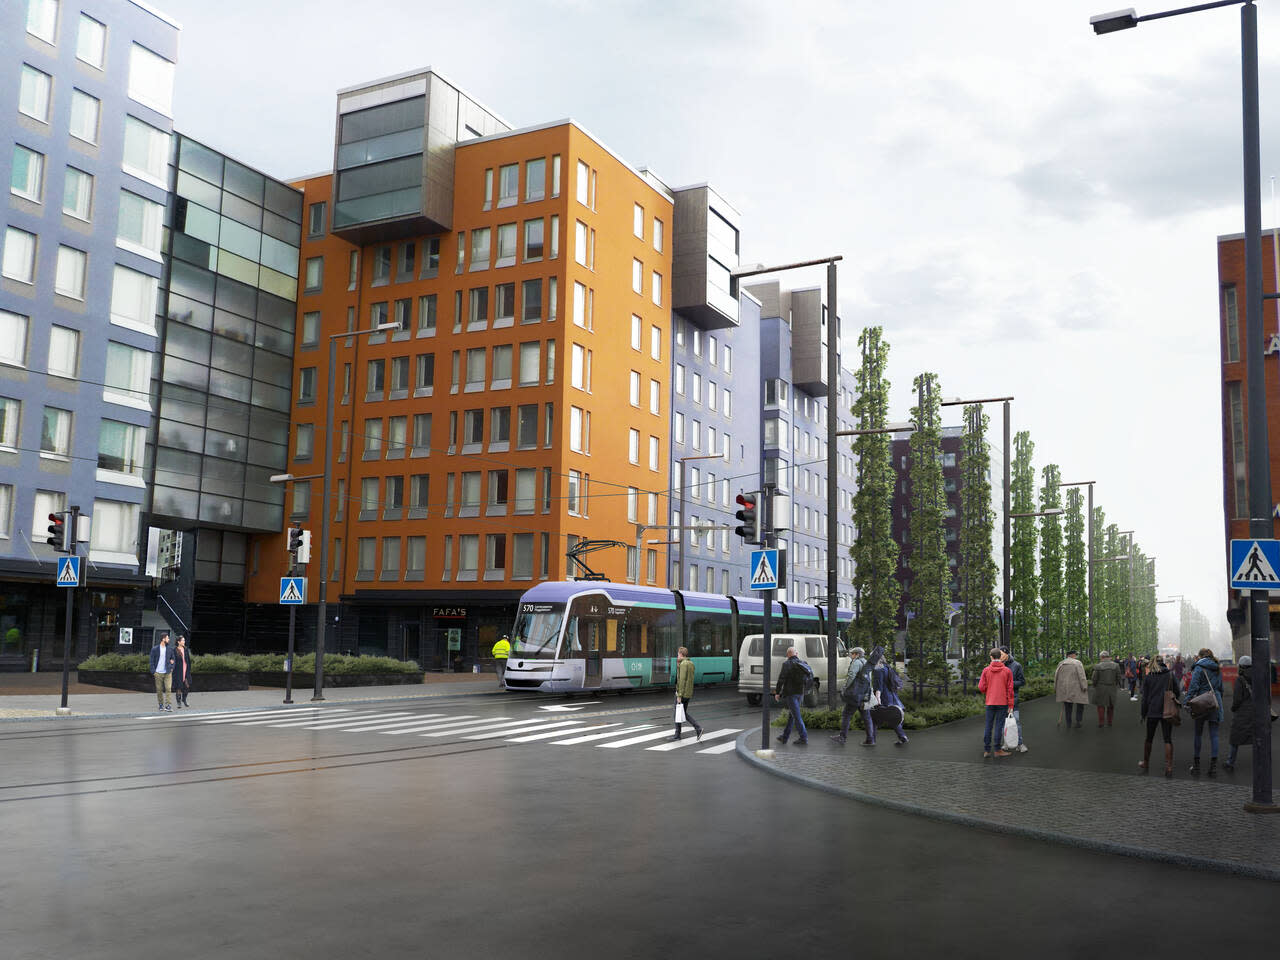 Vantaa aprueba el proyecto del tranvía